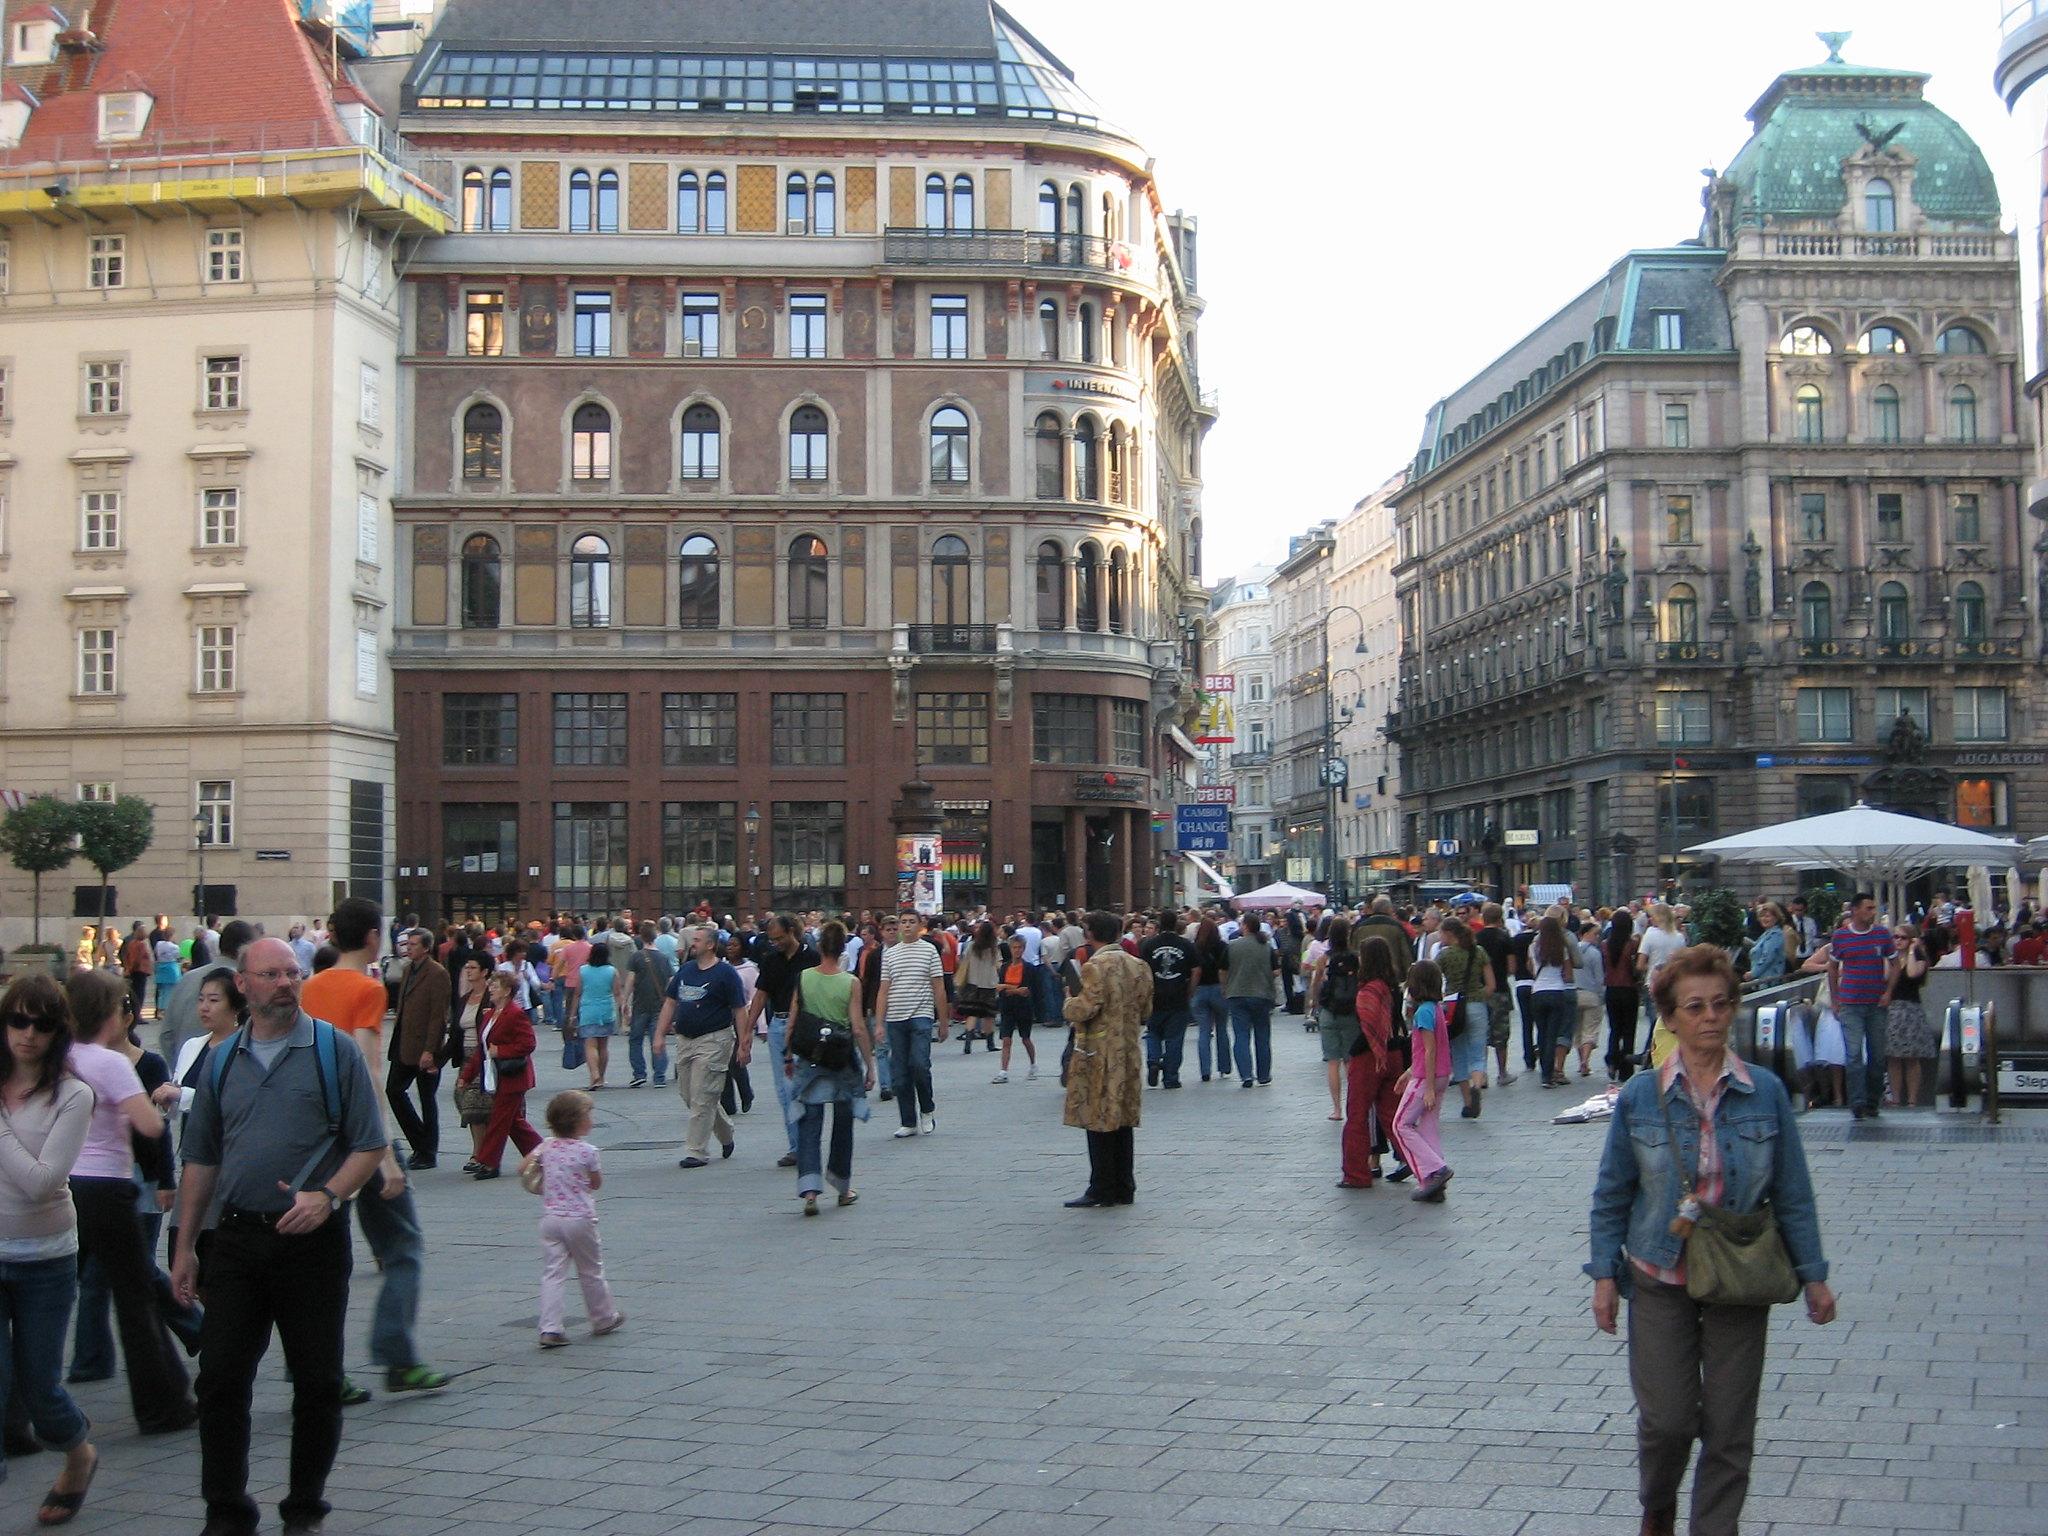 βιεννη Η πλατεία Στεφάνου (Stephansplatz) στο κέντρο της πόλης